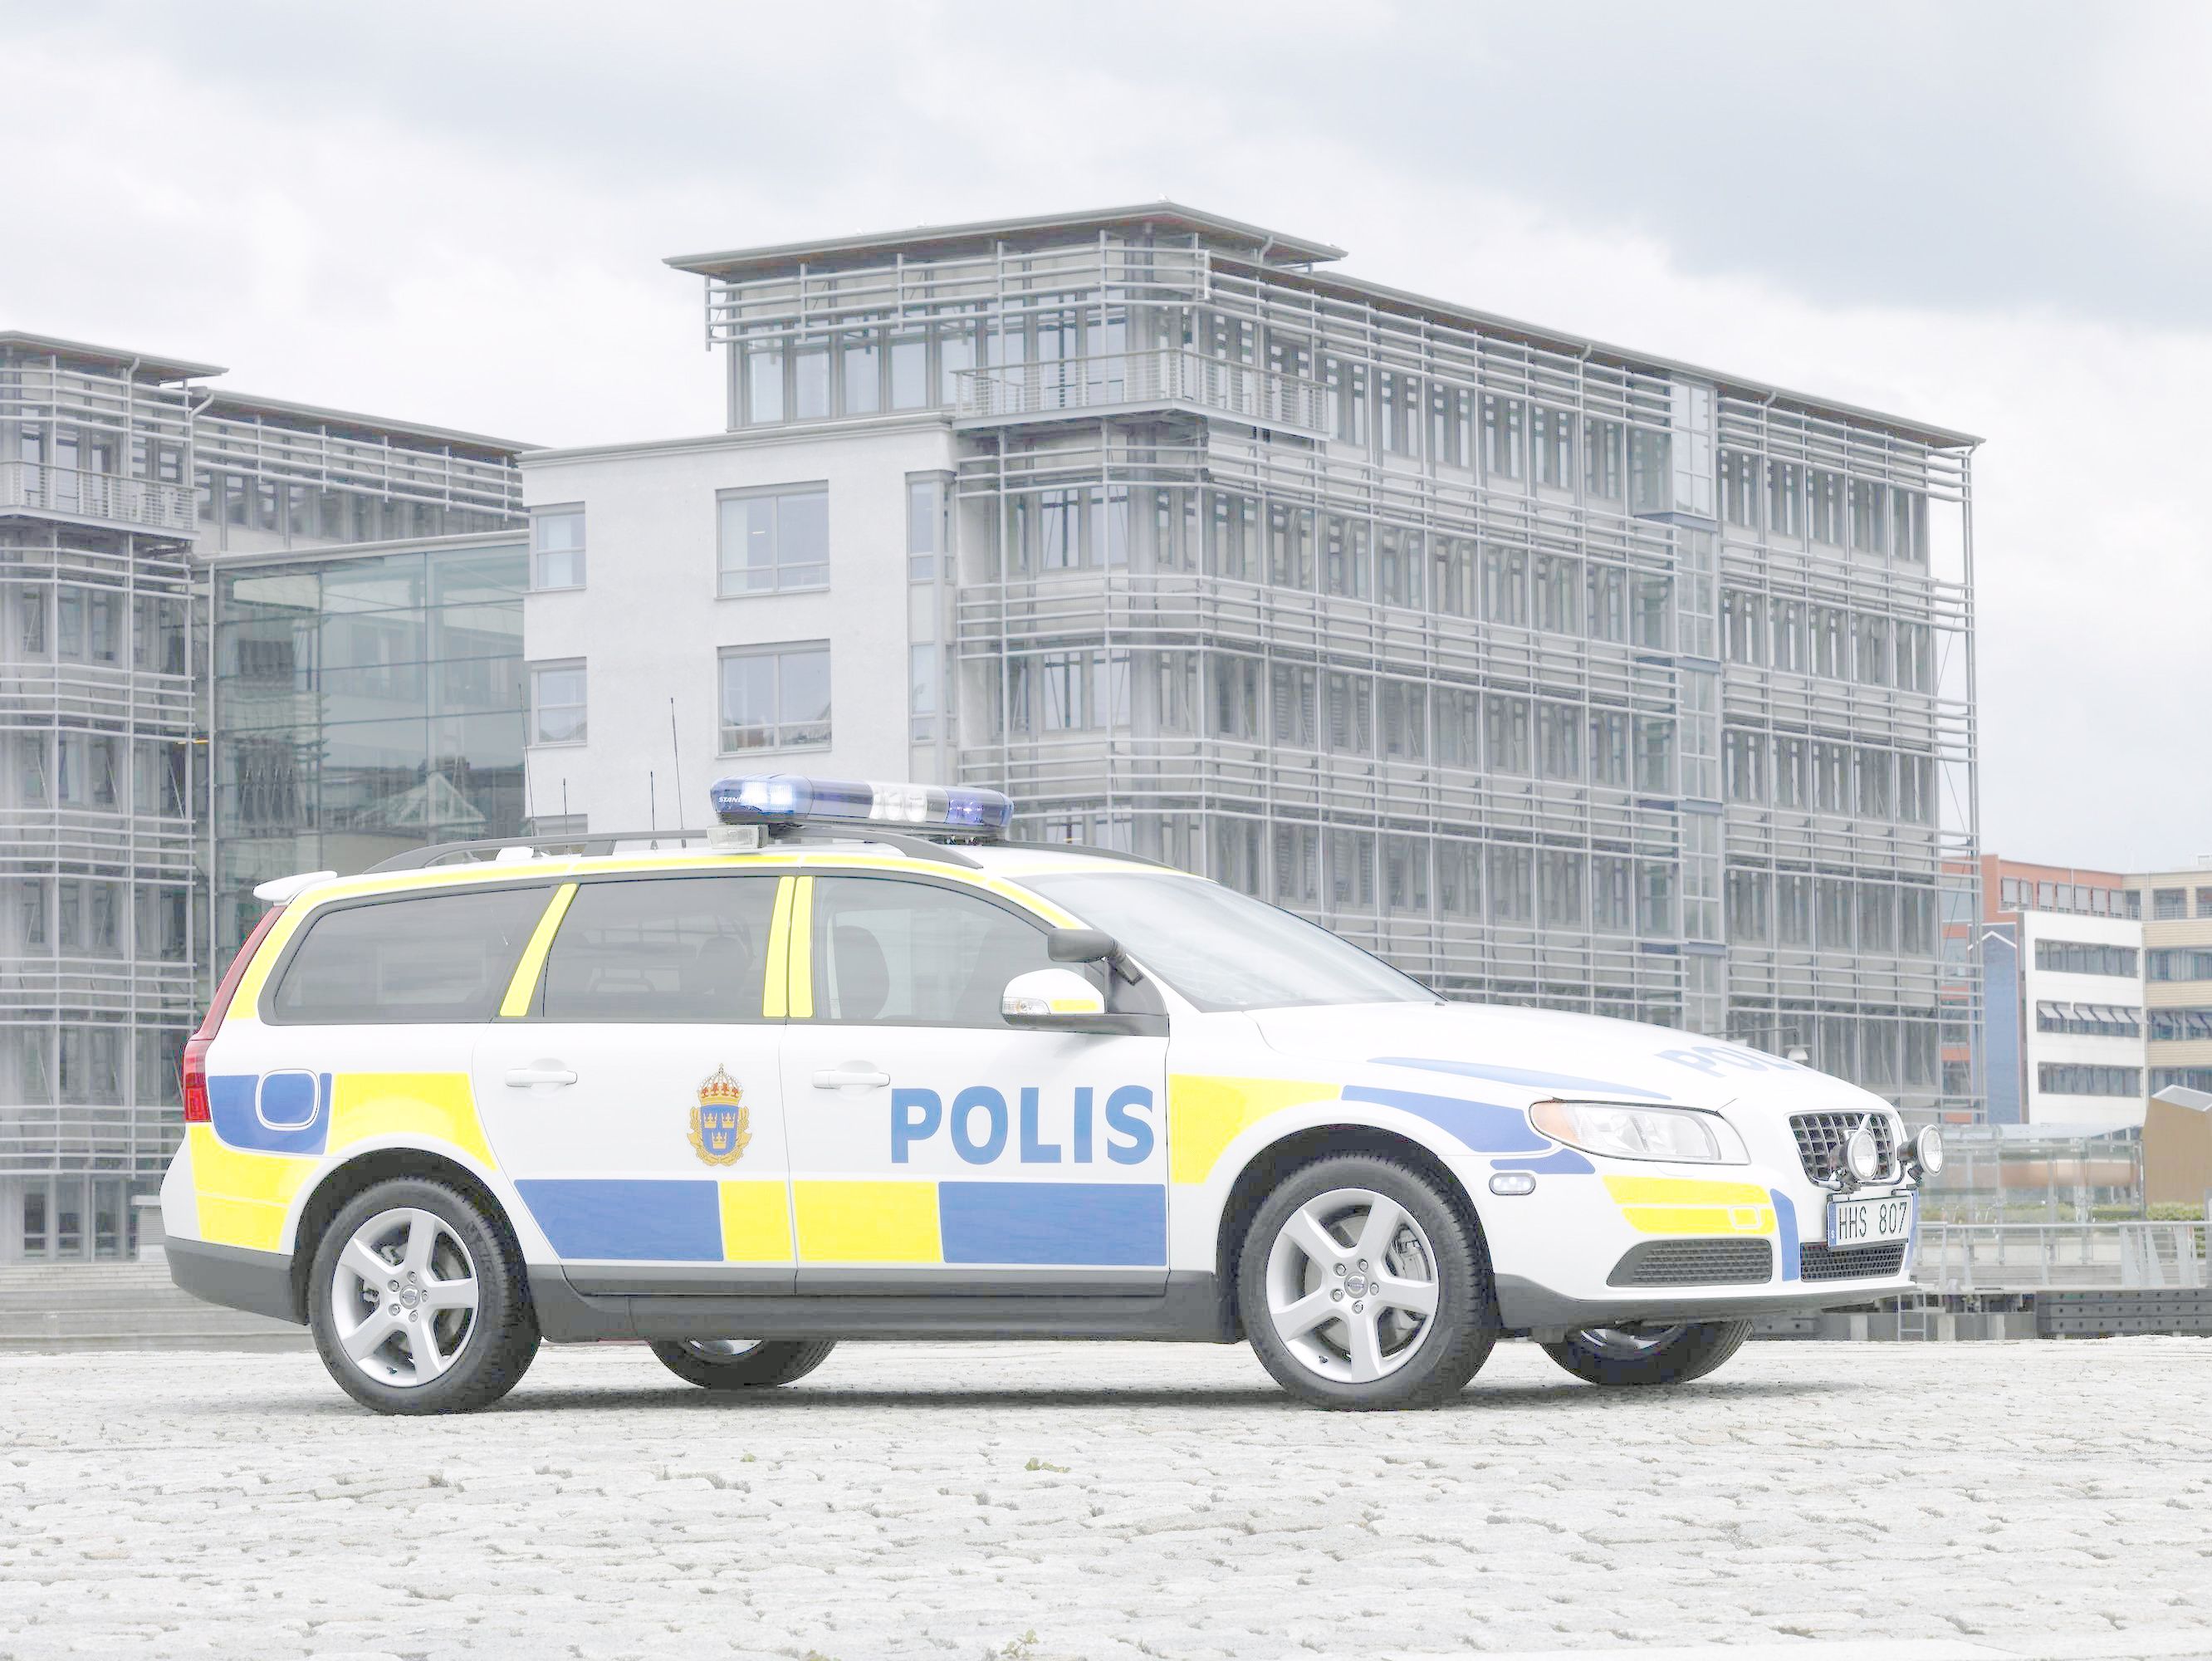 2007 Volvo V70 Police Car